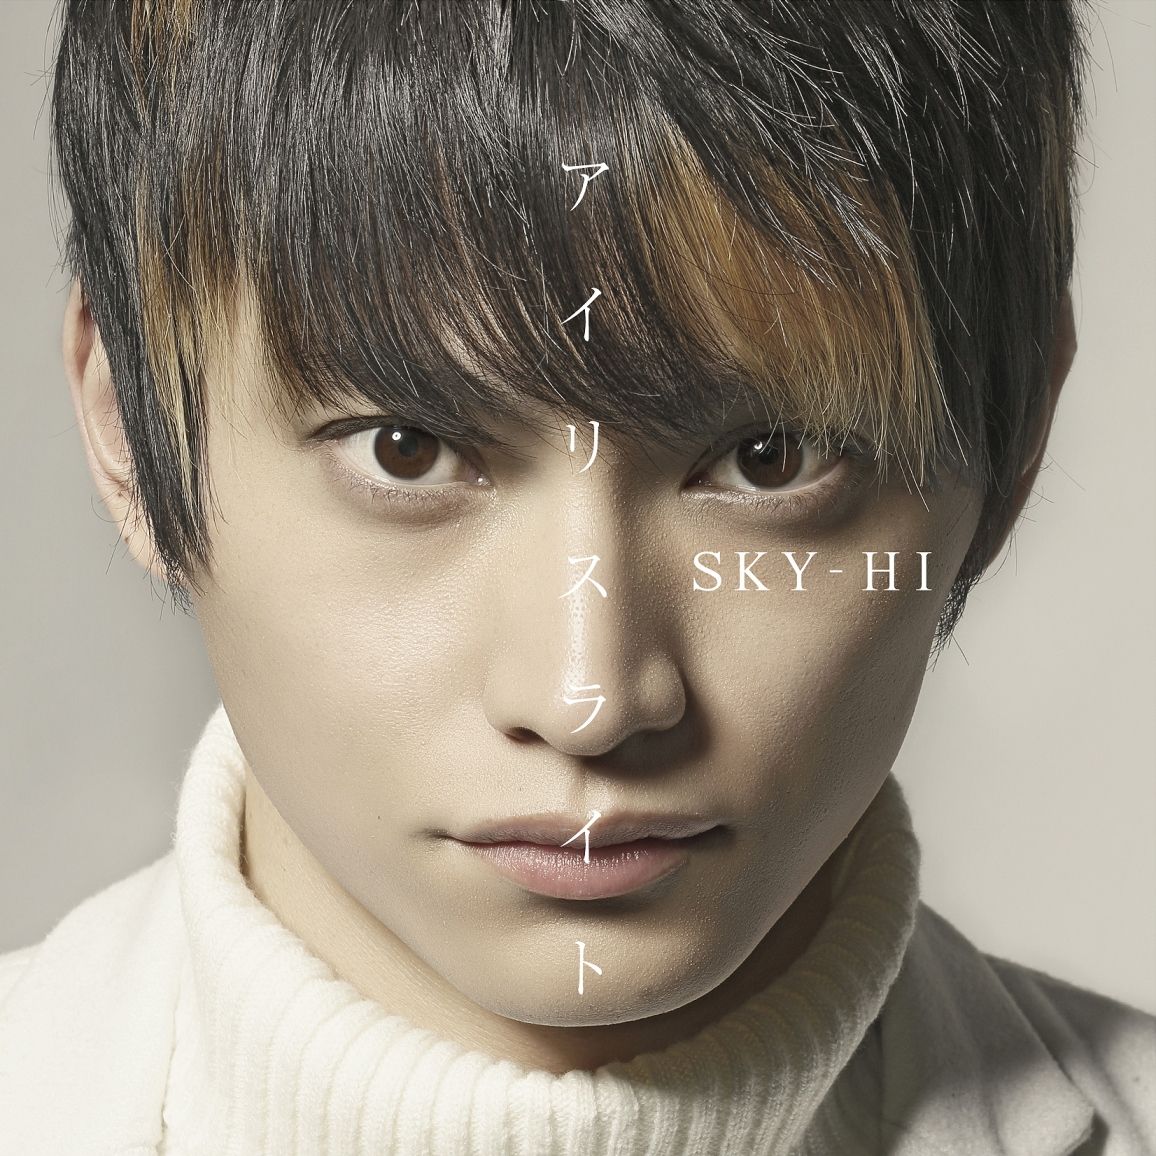 アイリスライト(LIVE映像盤CD＋DVD)[Sky-Hi]